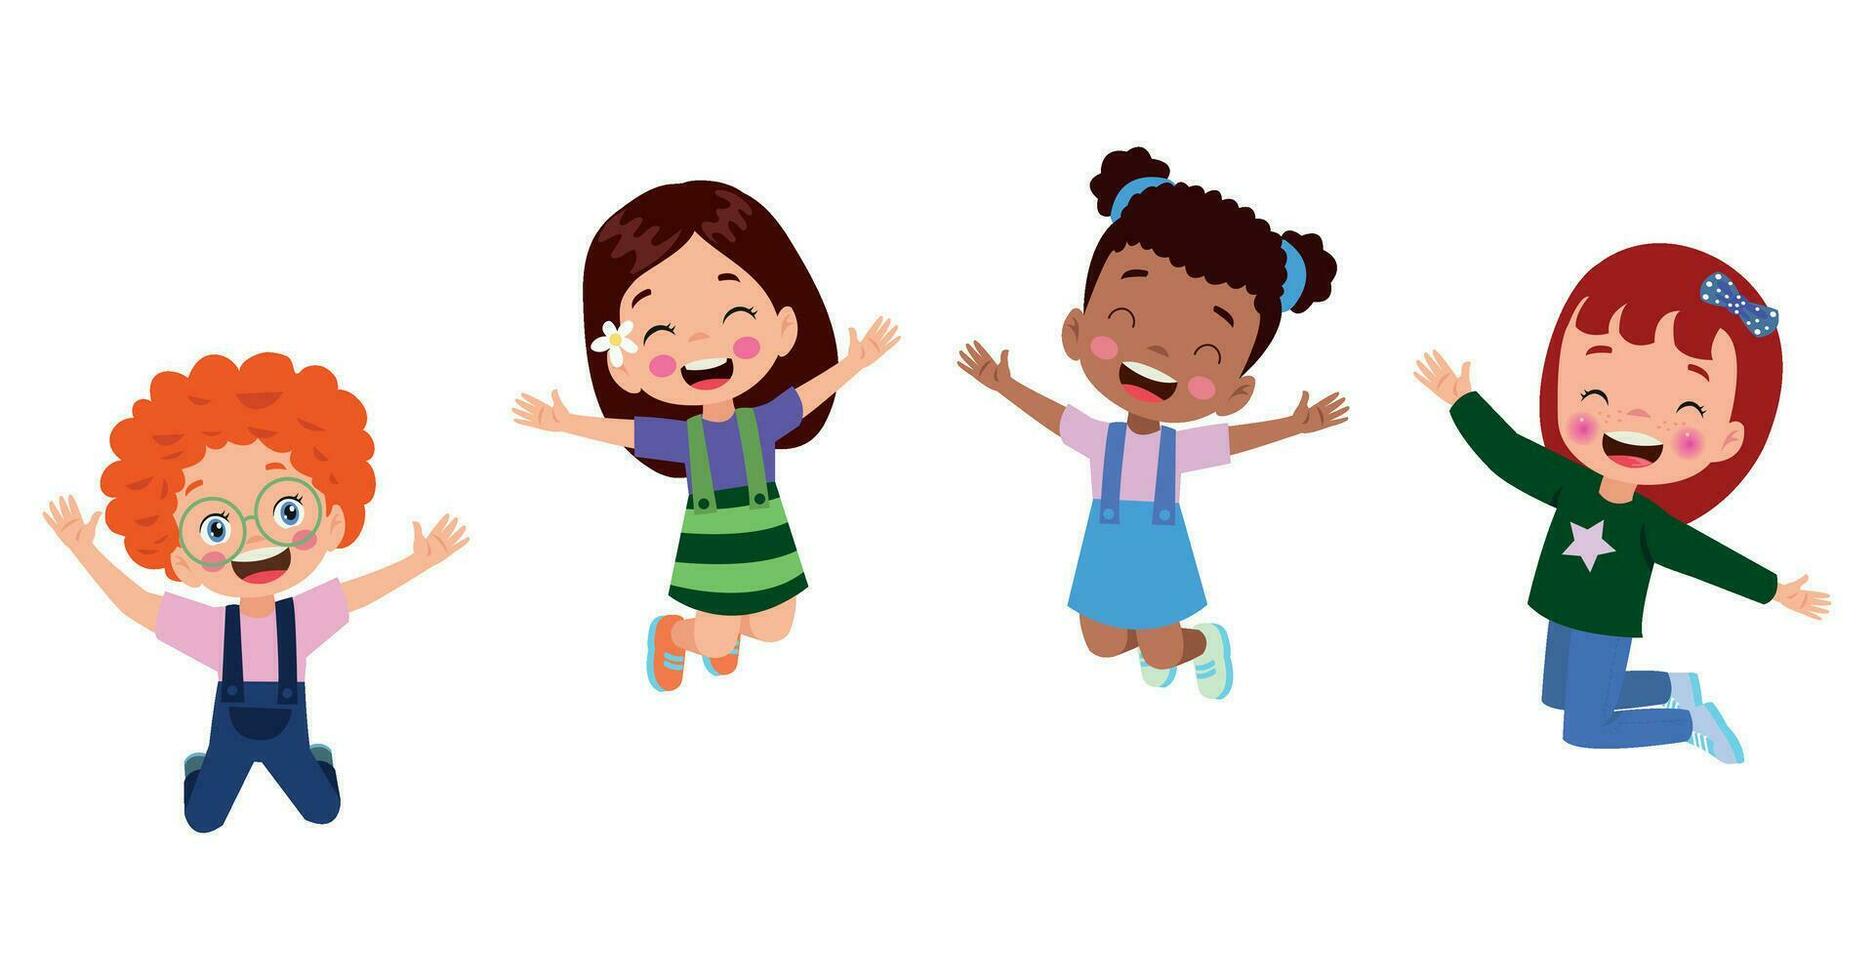 niños saltando. niños divertidos felices jugando y saltando en diferentes poses de acción educación pequeños personajes vectoriales de equipo. ilustración de niños y niños divertidos y sonrientes vector